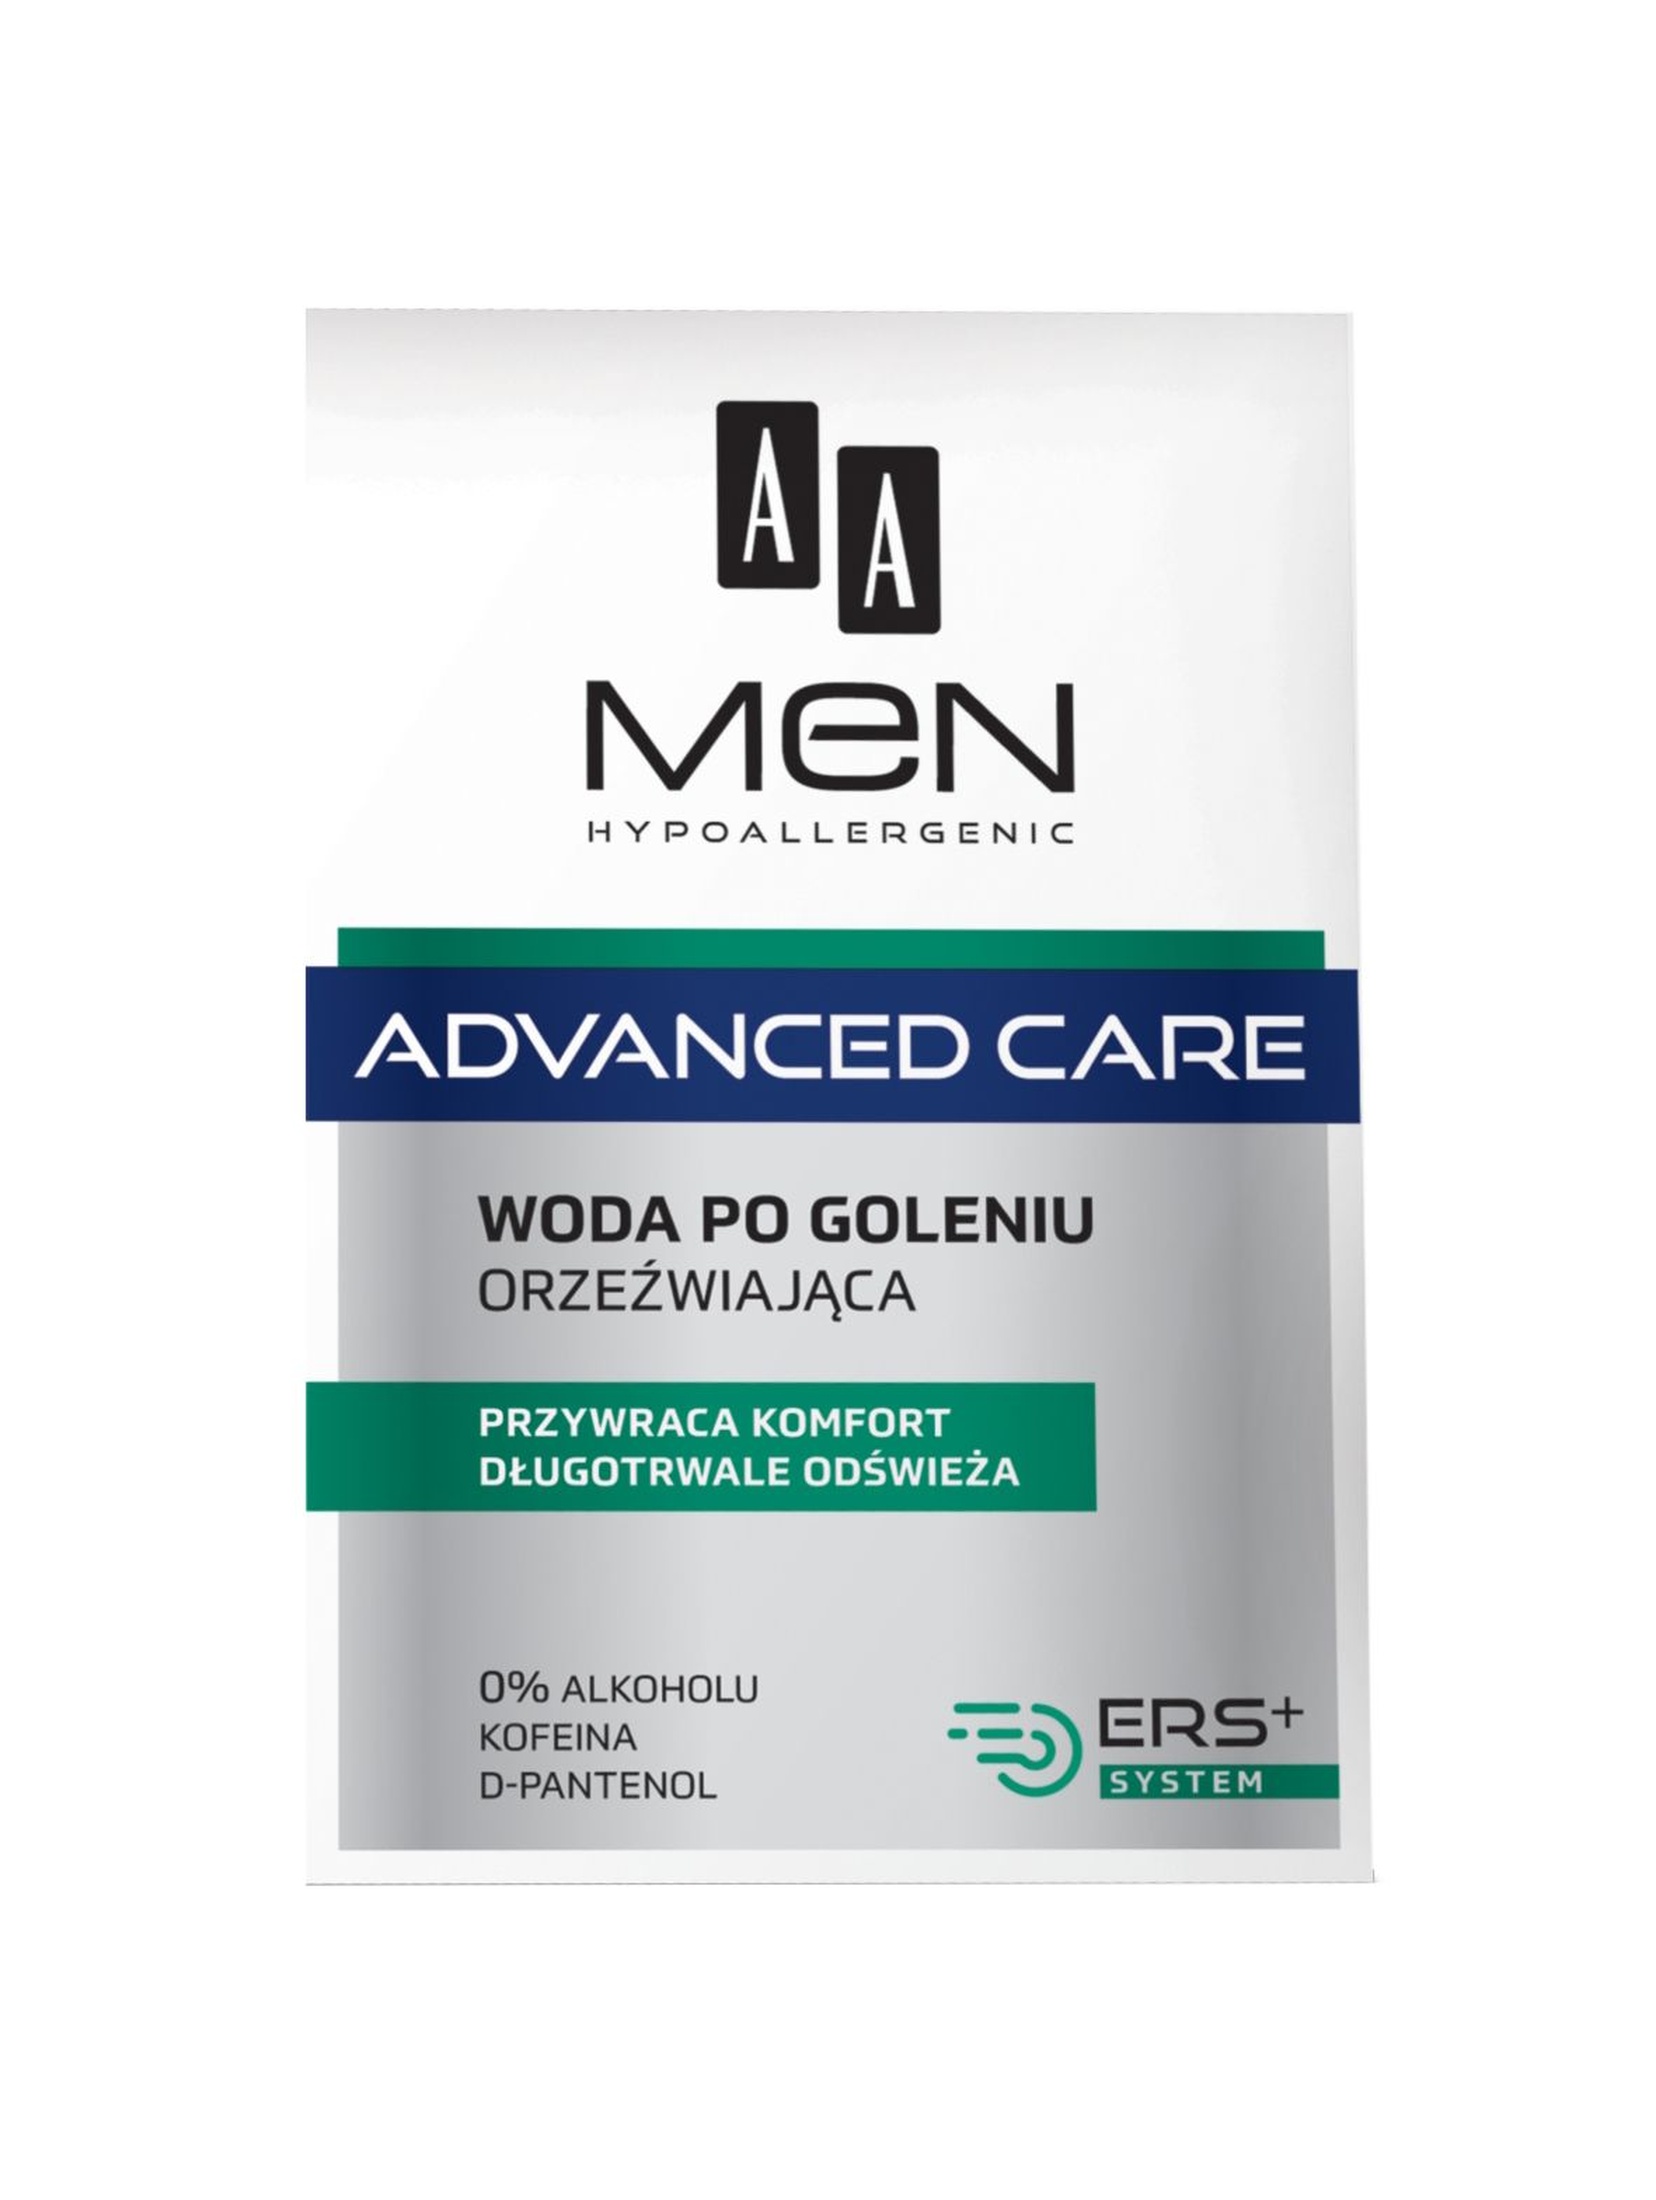 AA Men Advanced Care Woda po goleniu orzeźwiająca 100ml